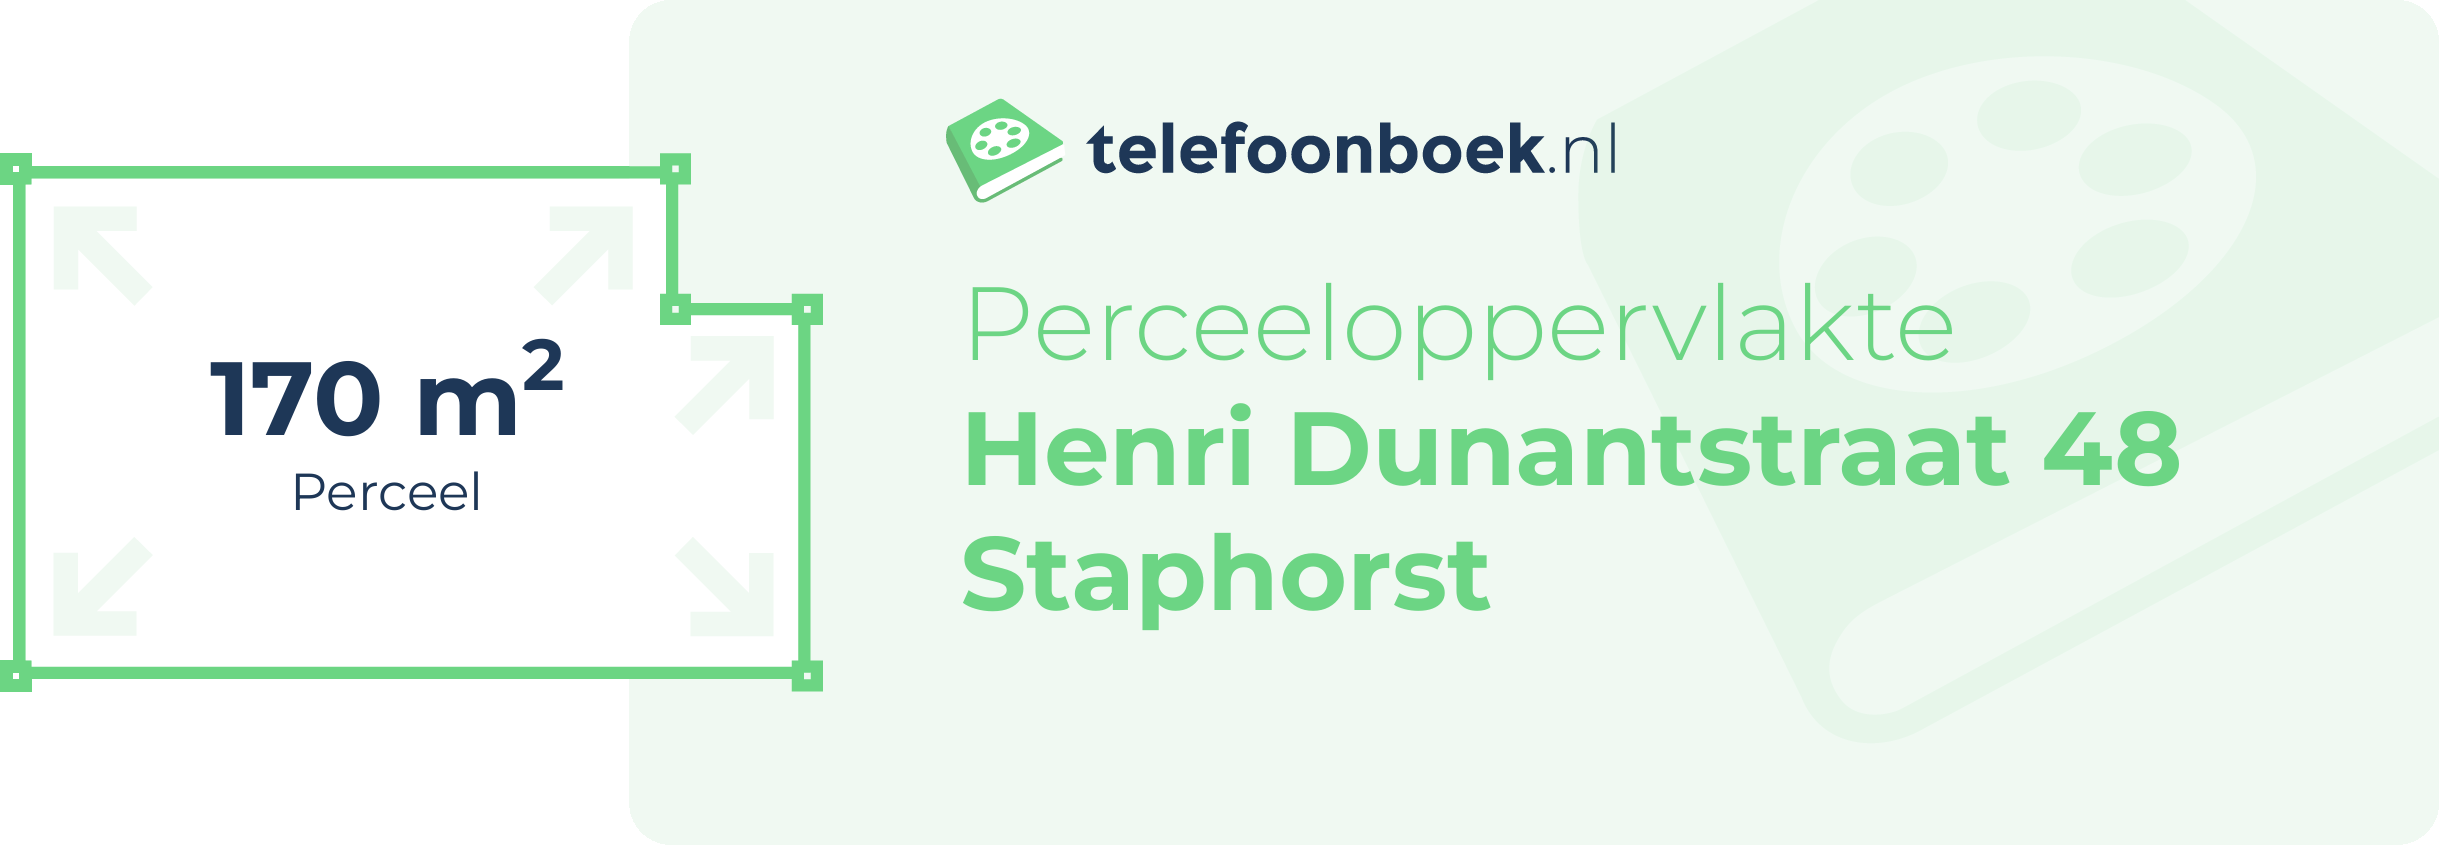 Perceeloppervlakte Henri Dunantstraat 48 Staphorst